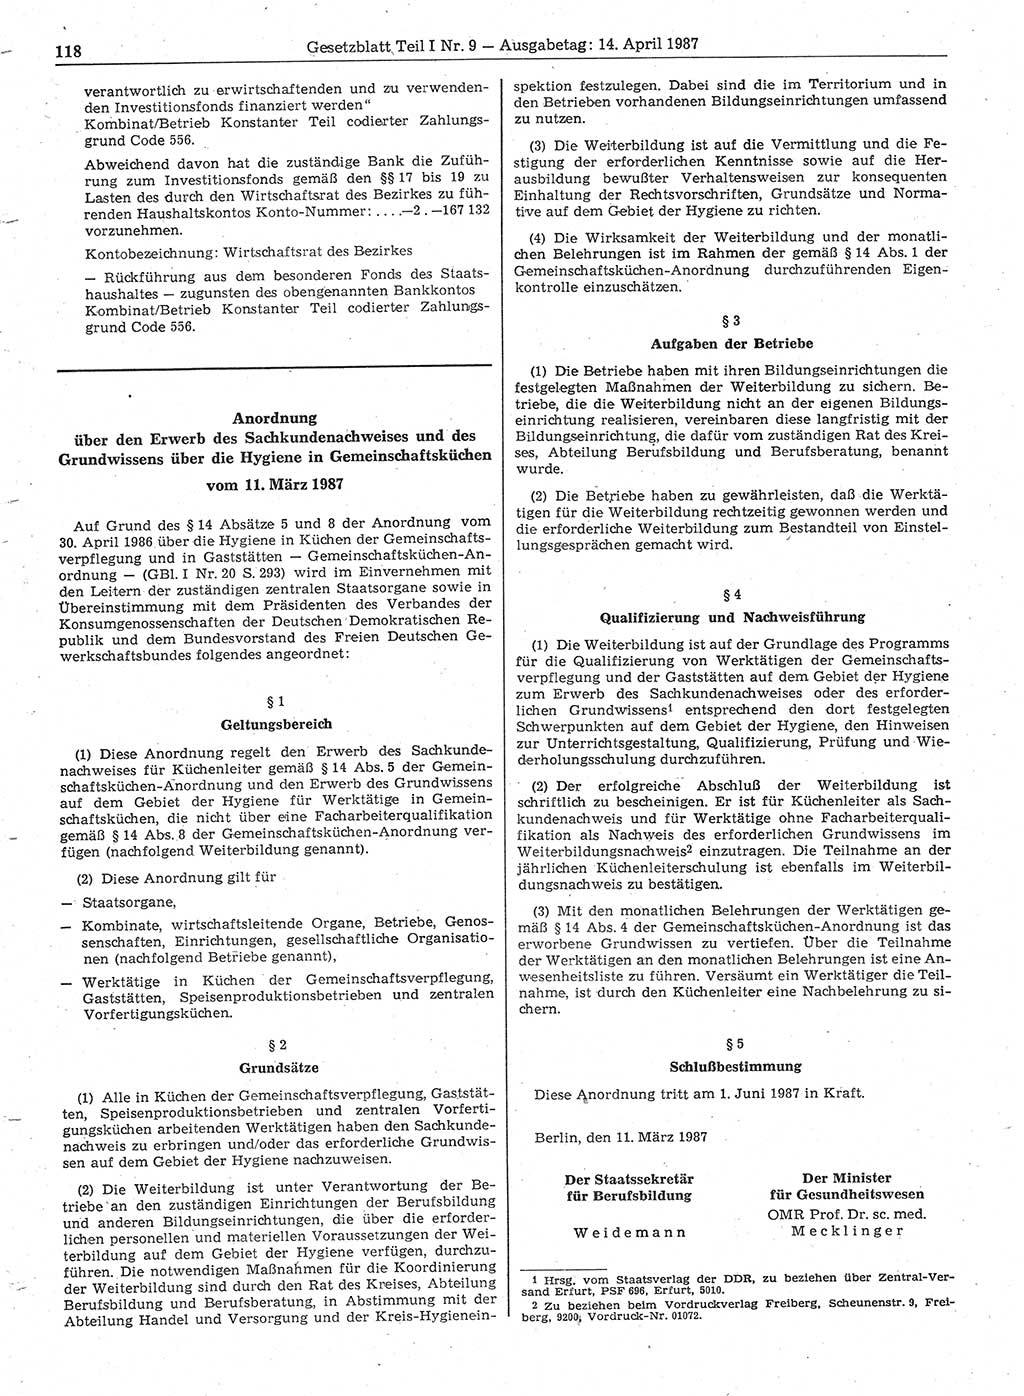 Gesetzblatt (GBl.) der Deutschen Demokratischen Republik (DDR) Teil Ⅰ 1987, Seite 118 (GBl. DDR Ⅰ 1987, S. 118)